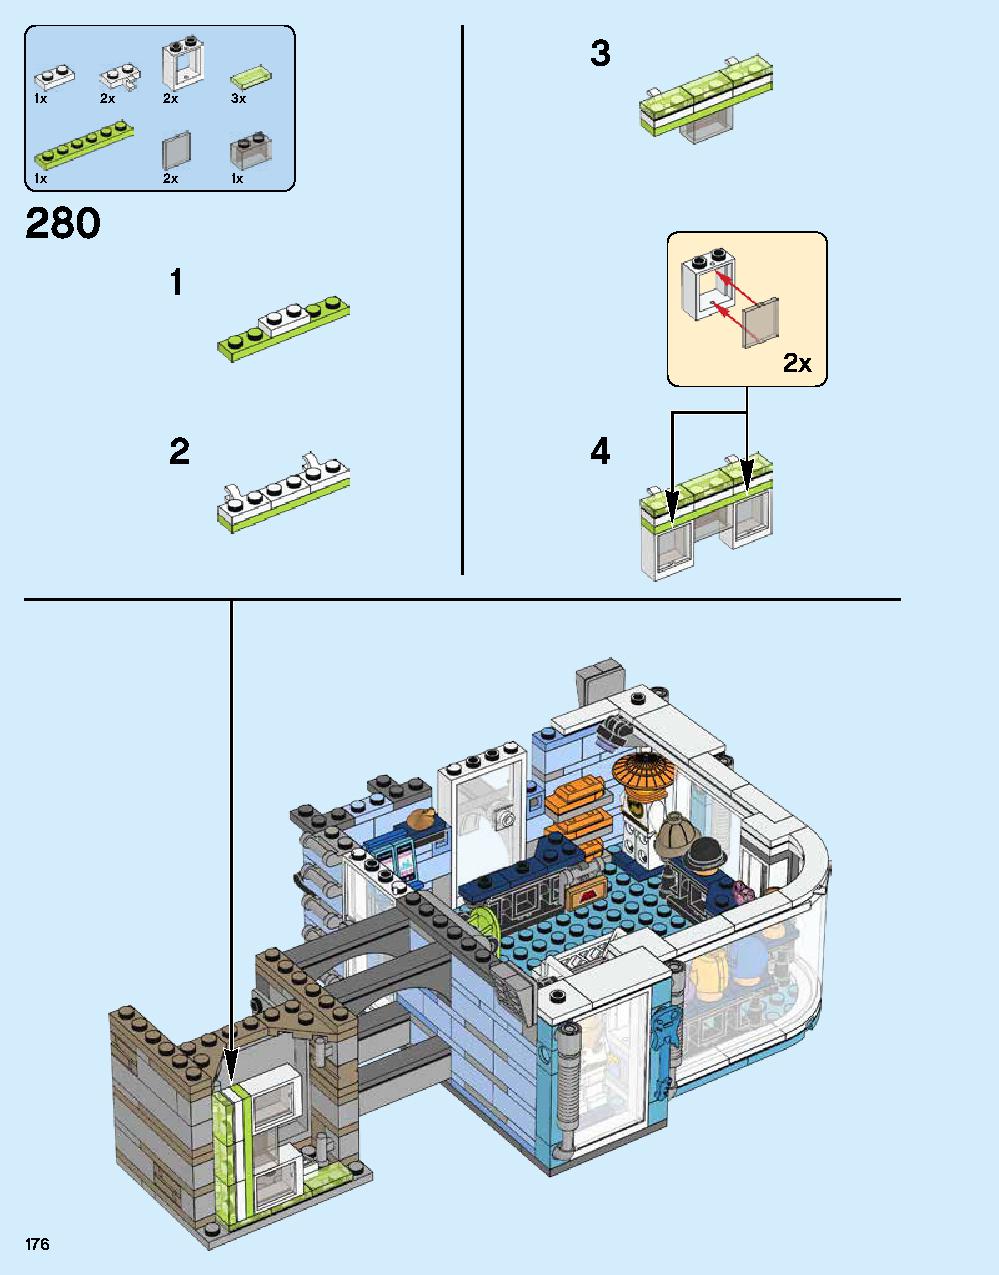 ニンジャゴー シティ 70620 レゴの商品情報 レゴの説明書・組立方法 176 page